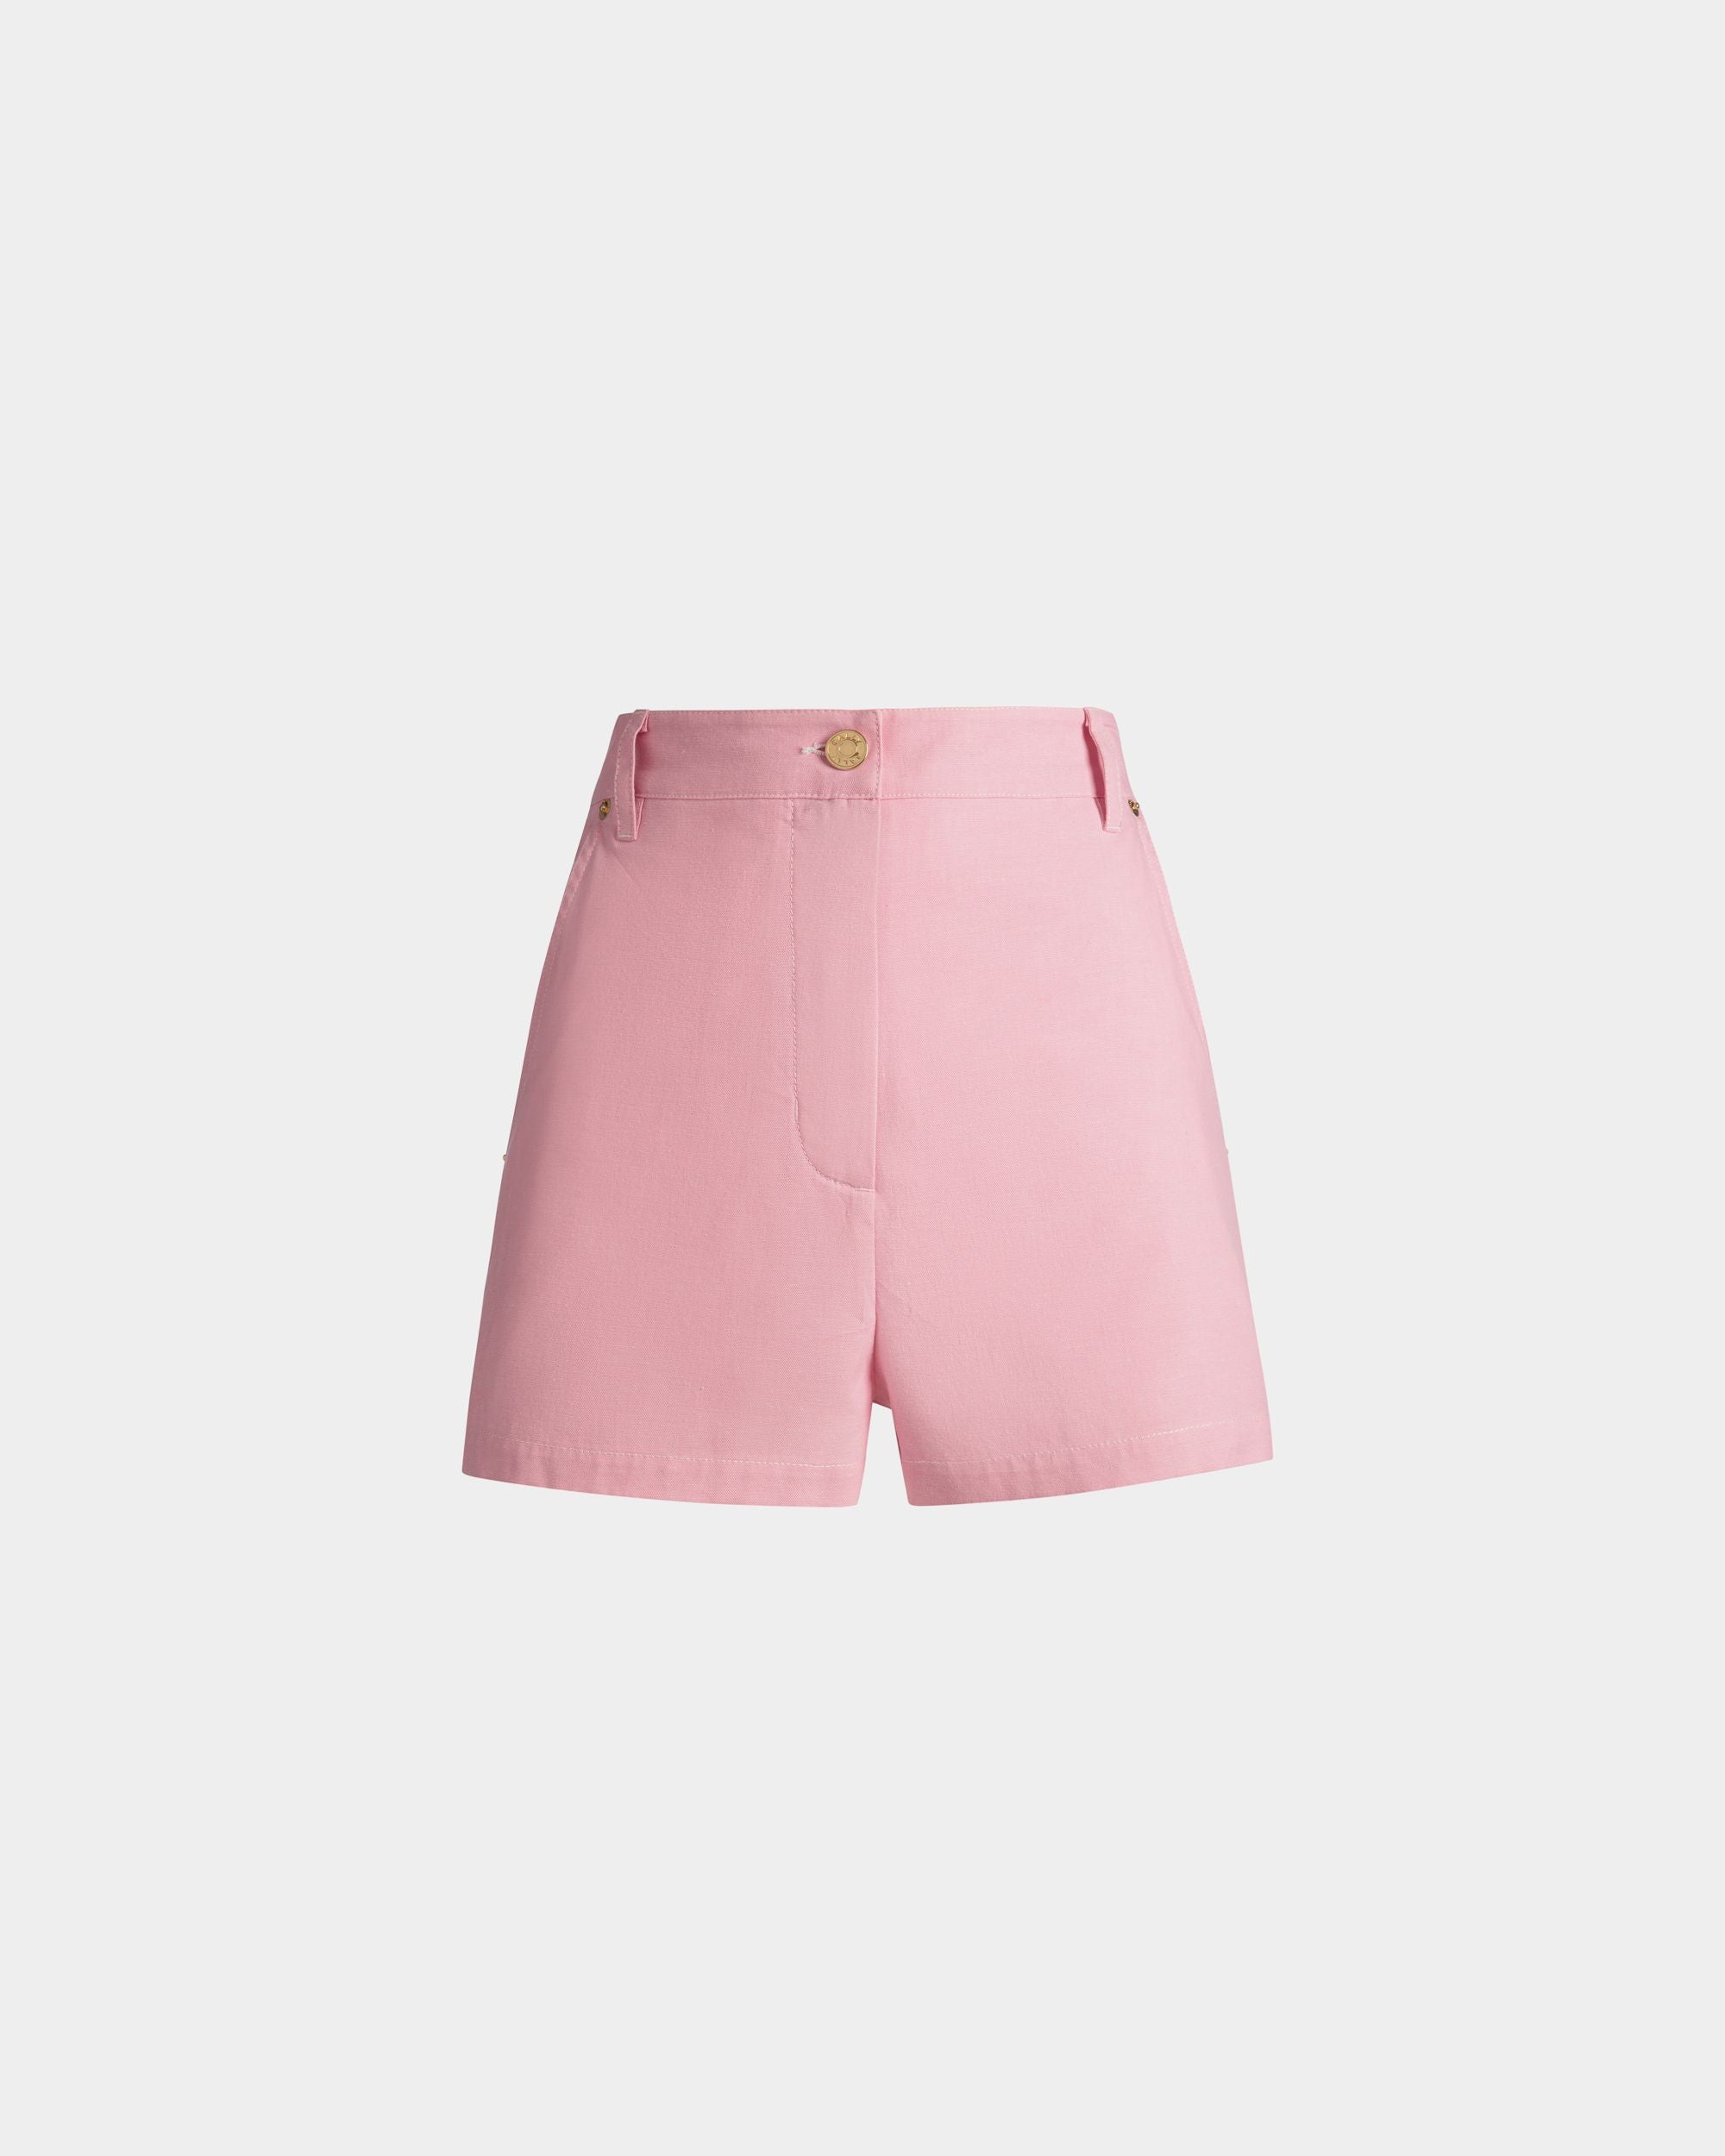 Shorts da donna in cotone denim rosa | Bally | Still Life Fronte